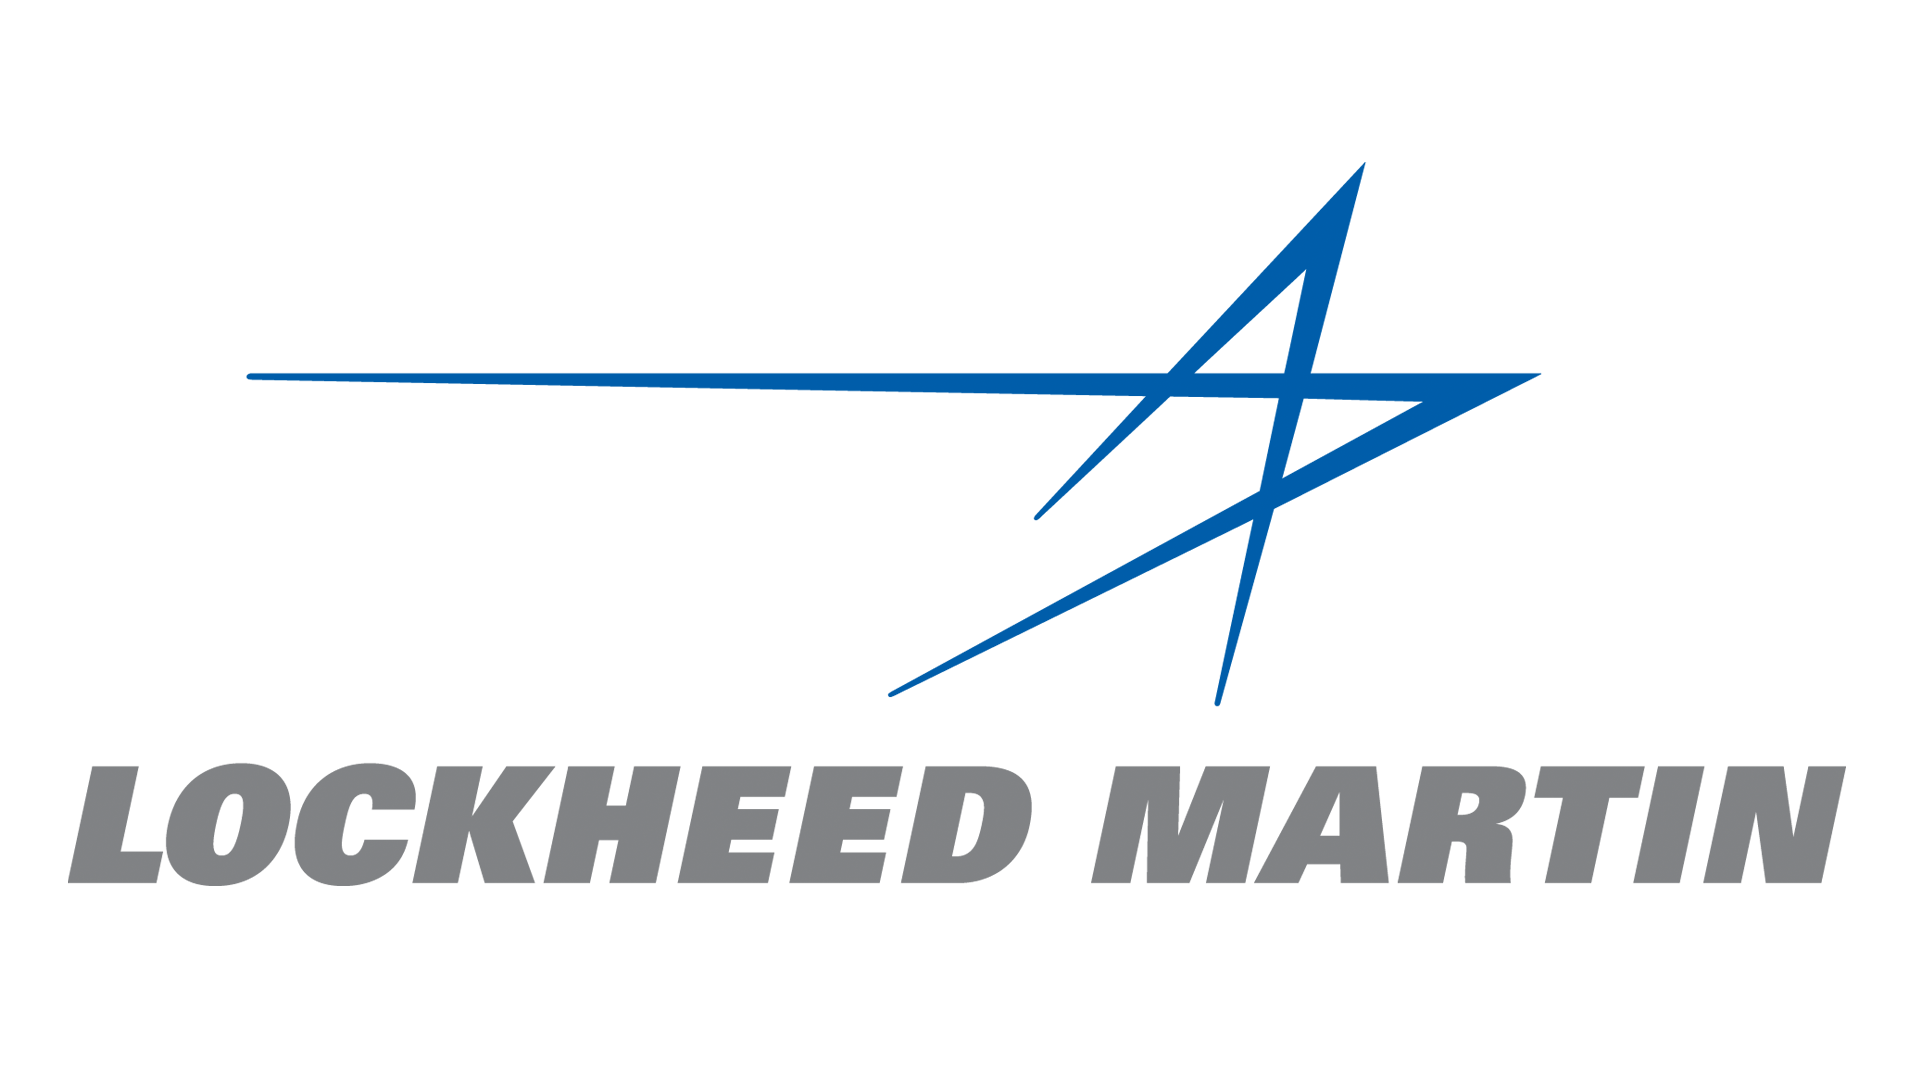 Lockheed-martin-logo